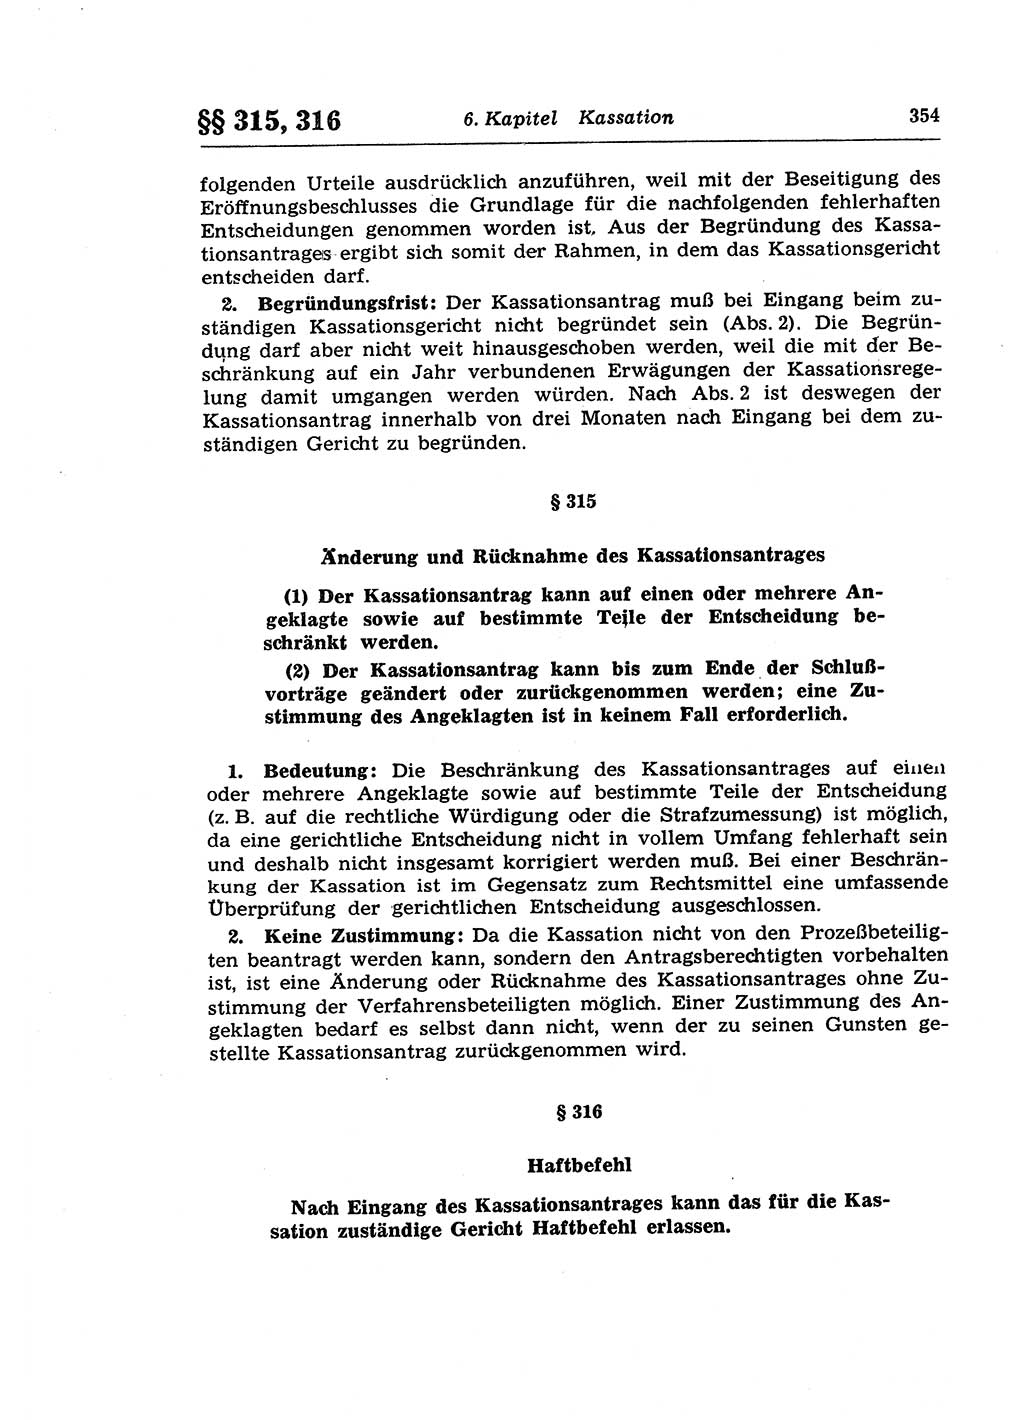 Strafprozeßrecht der DDR (Deutsche Demokratische Republik), Lehrkommentar zur Strafprozeßordnung (StPO) 1968, Seite 354 (Strafprozeßr. DDR Lehrkomm. StPO 19688, S. 354)